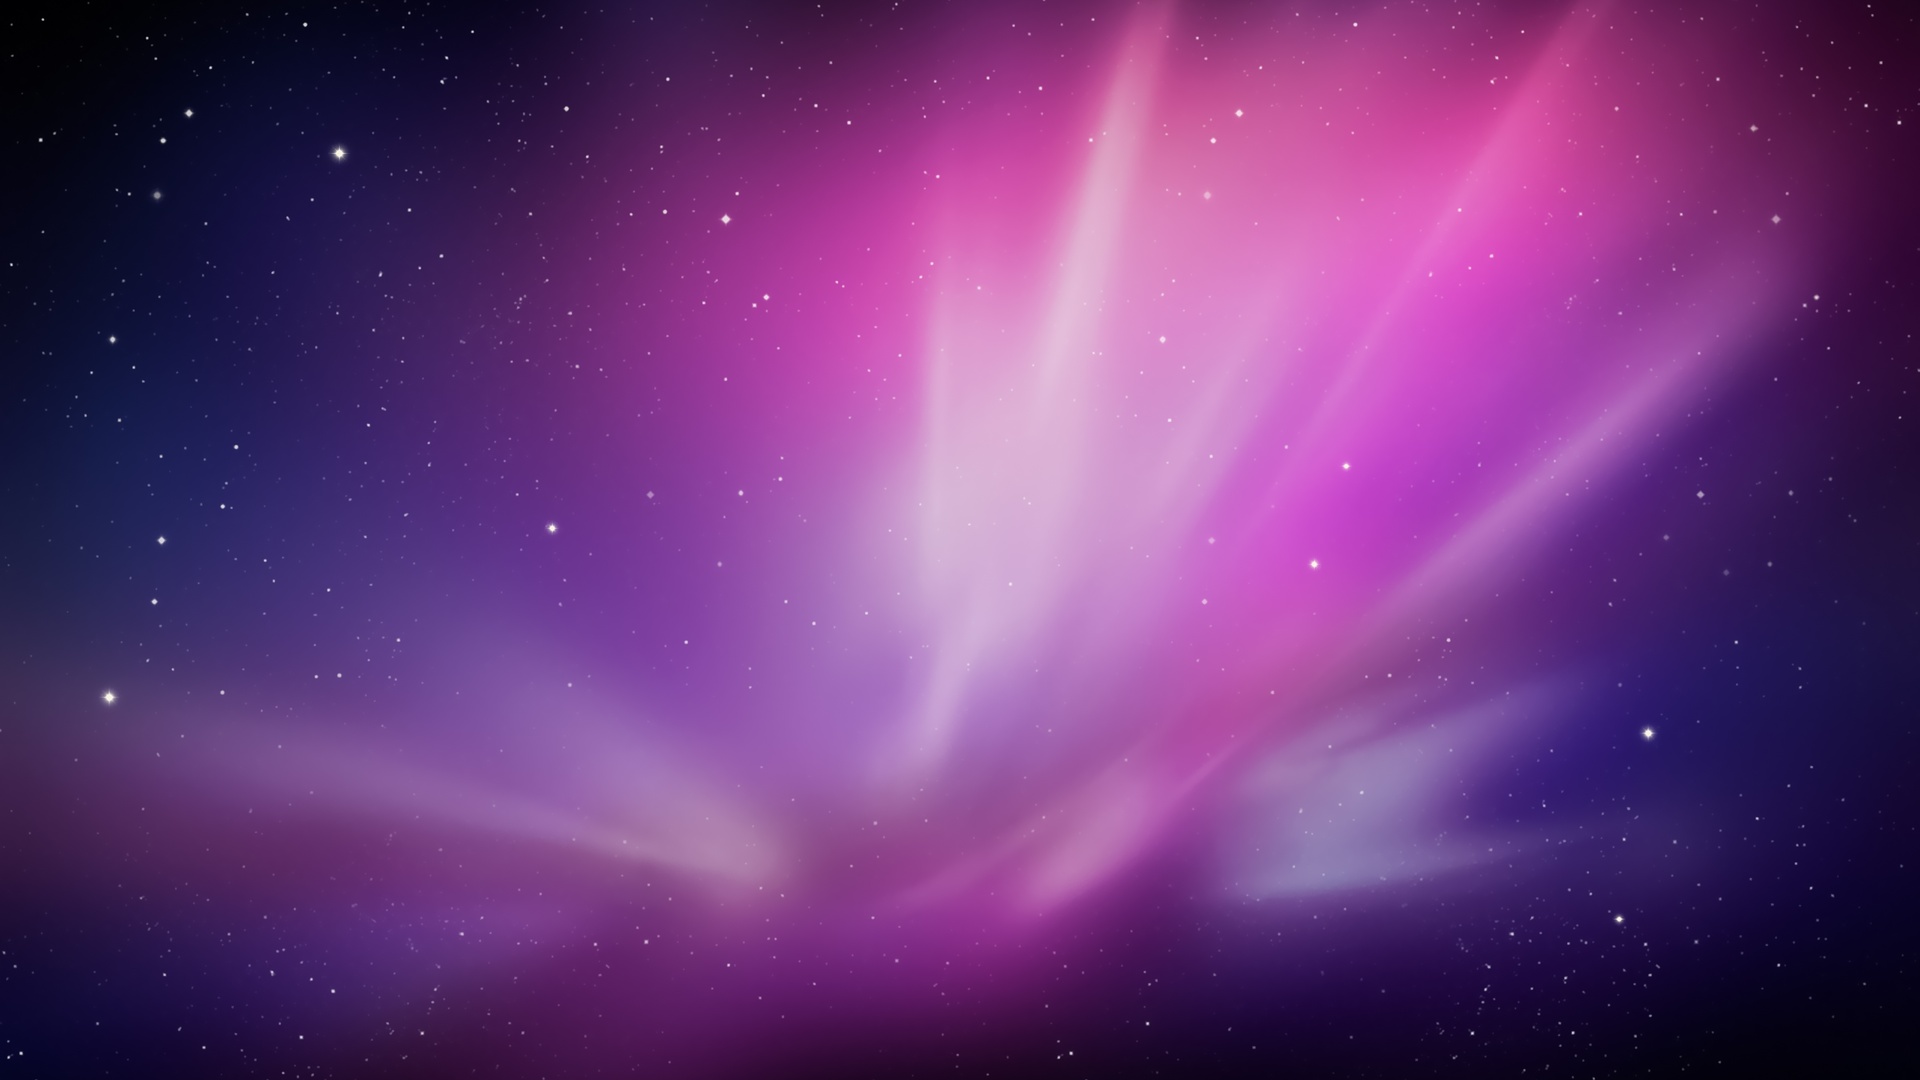 梦幻紫色背景苹果mac经典5k壁纸壁纸梦幻紫色背景壁纸图片 桌面壁纸图片 壁纸下载 元气壁纸